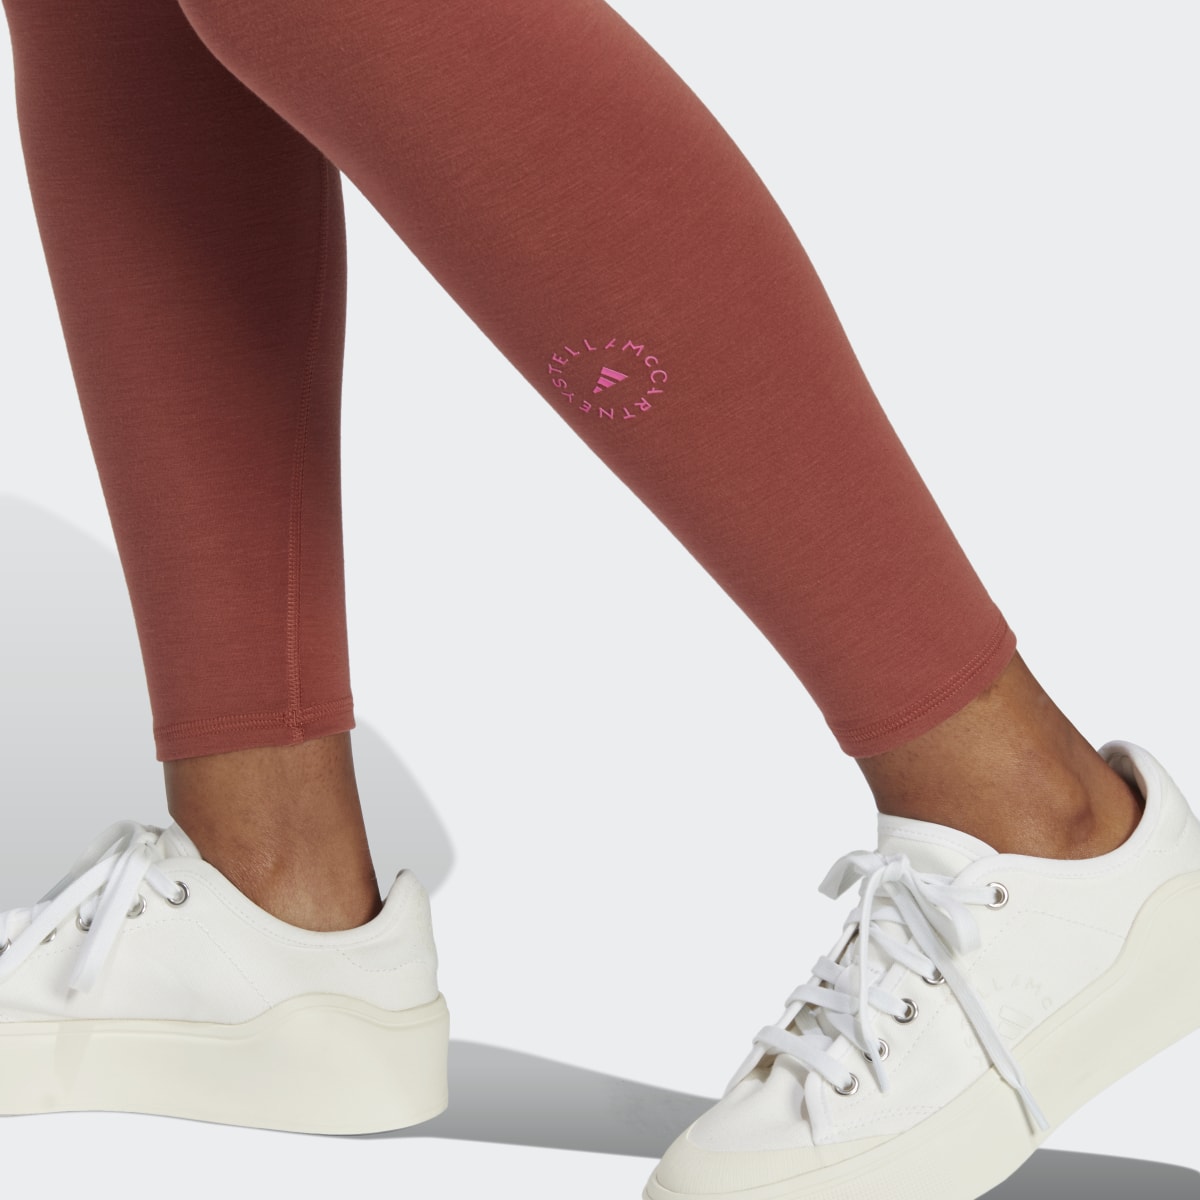 Adidas by Stella McCartney 7/8 Yoga Leggings. 6